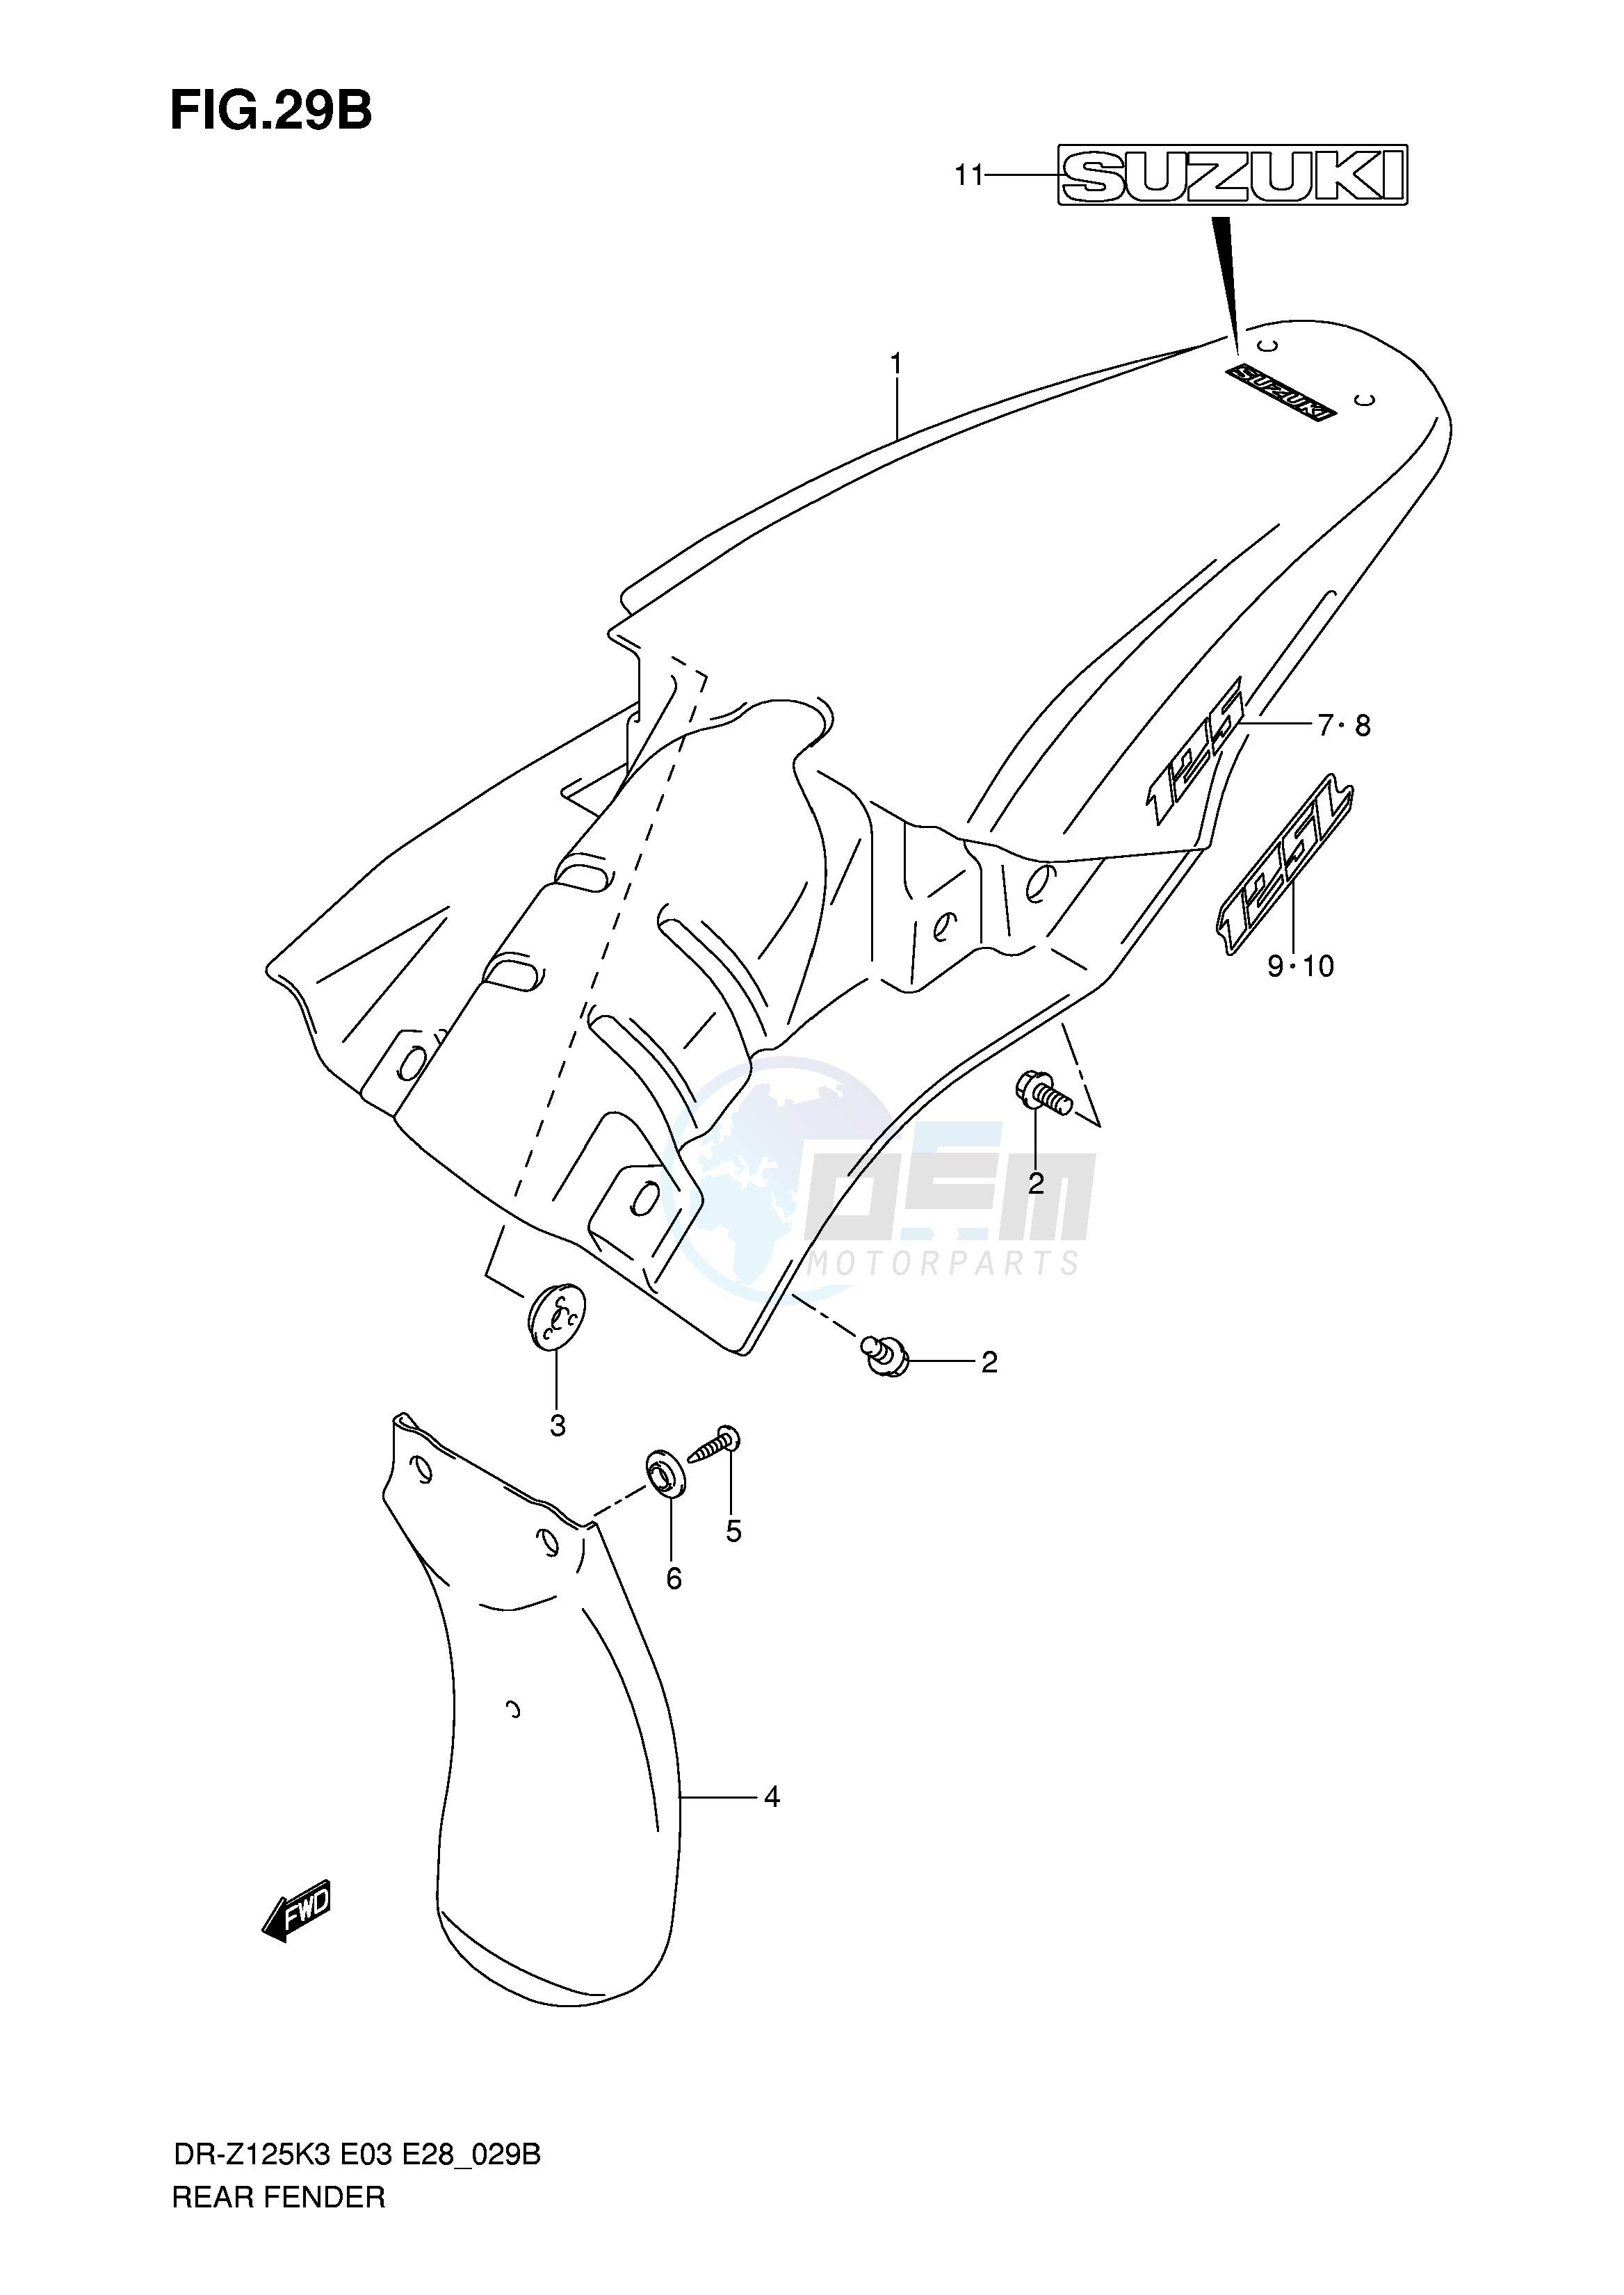 REAR FENDER (MODEL K7) blueprint